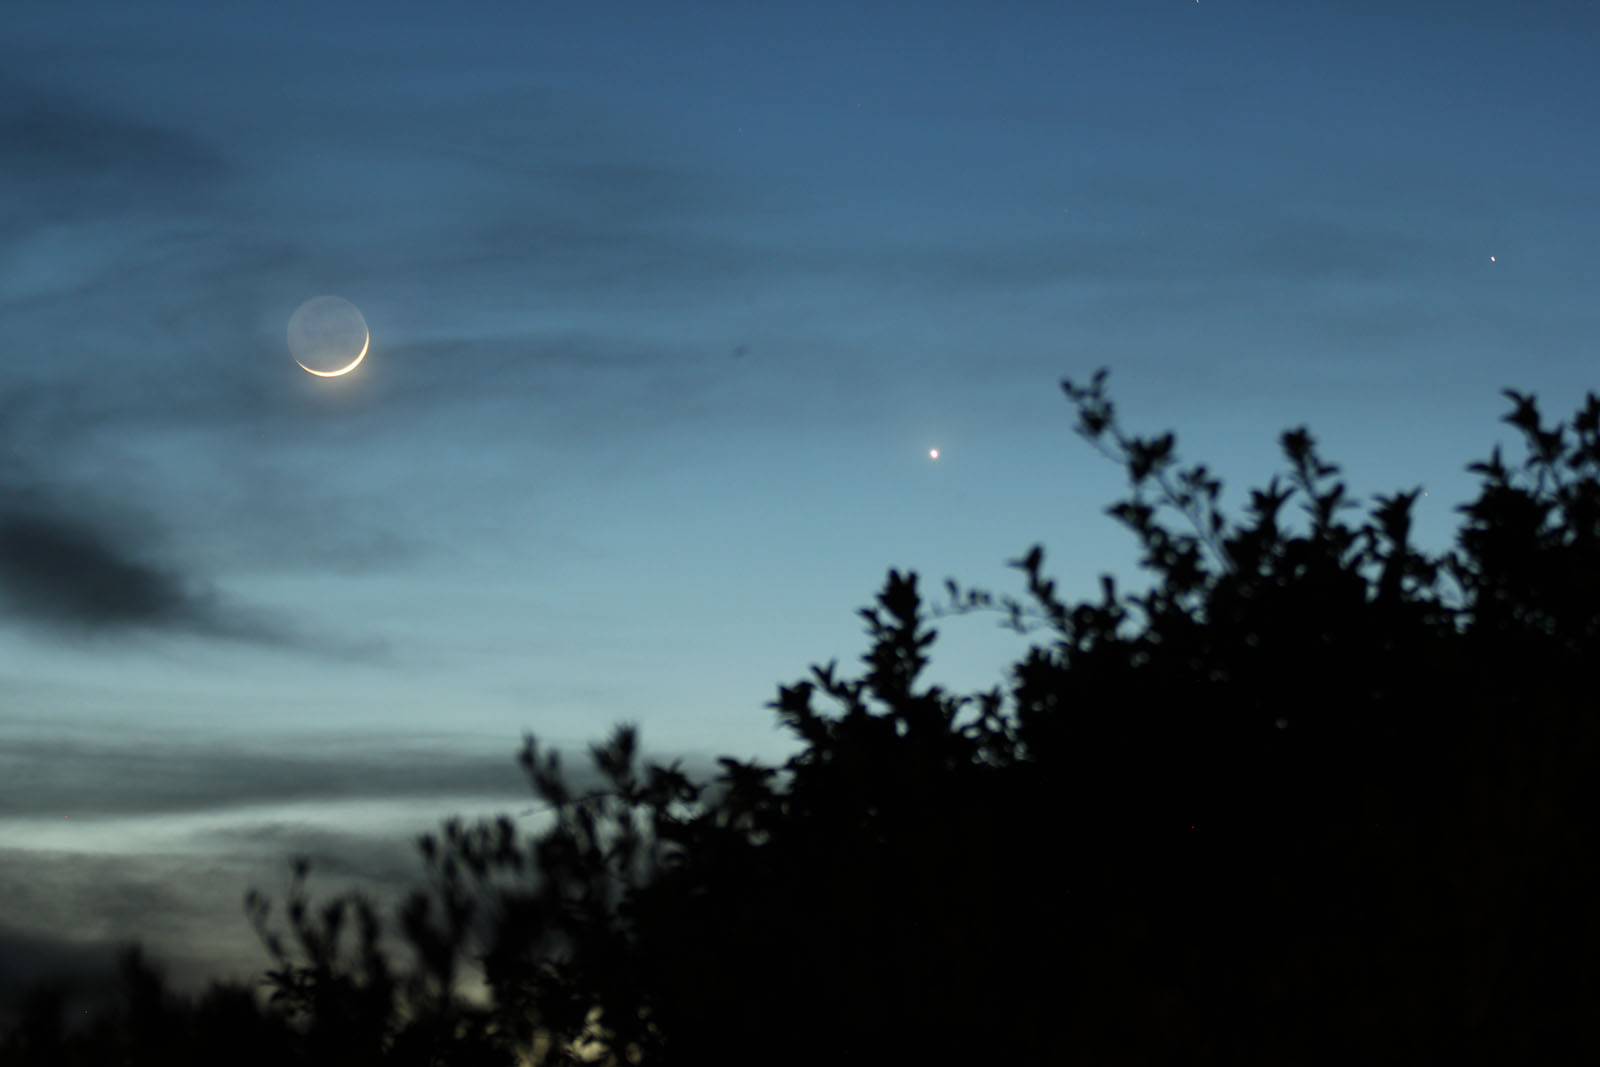 3/18/18 Moon, Venus, and Mercury